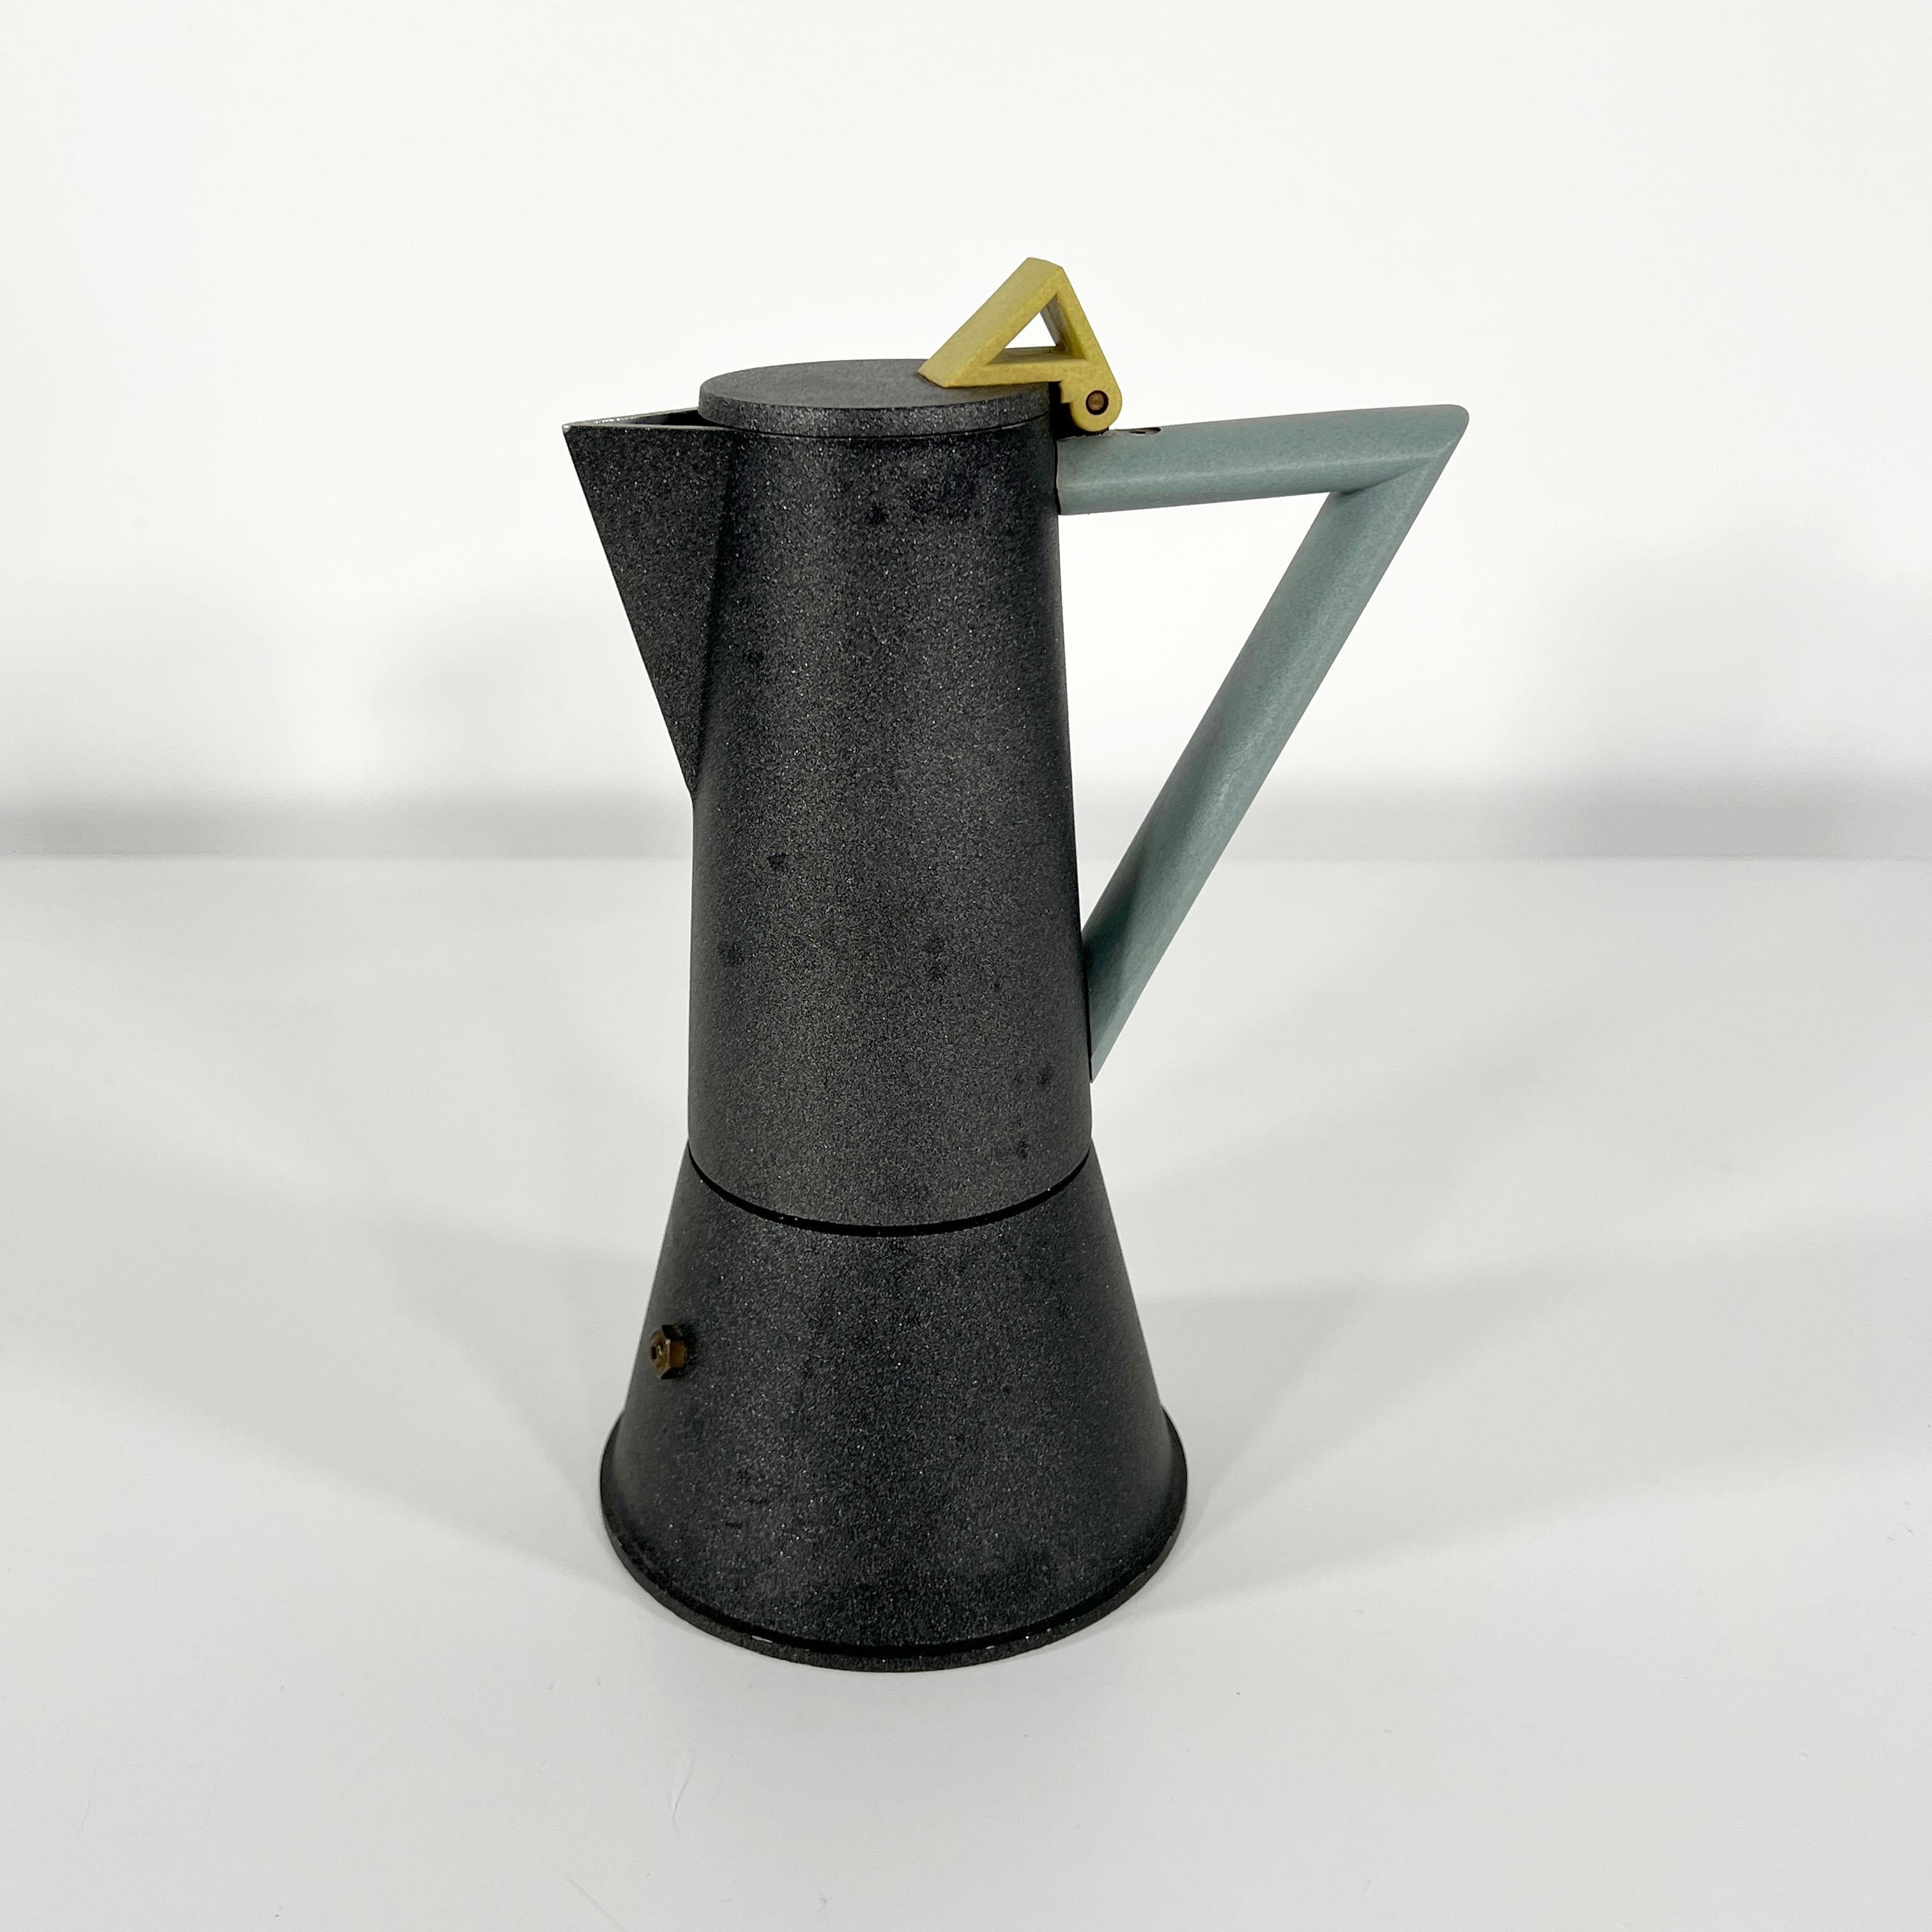 Designer - Ettore Sottsass
Producer - Lagostina
Model - Coffee Maker 